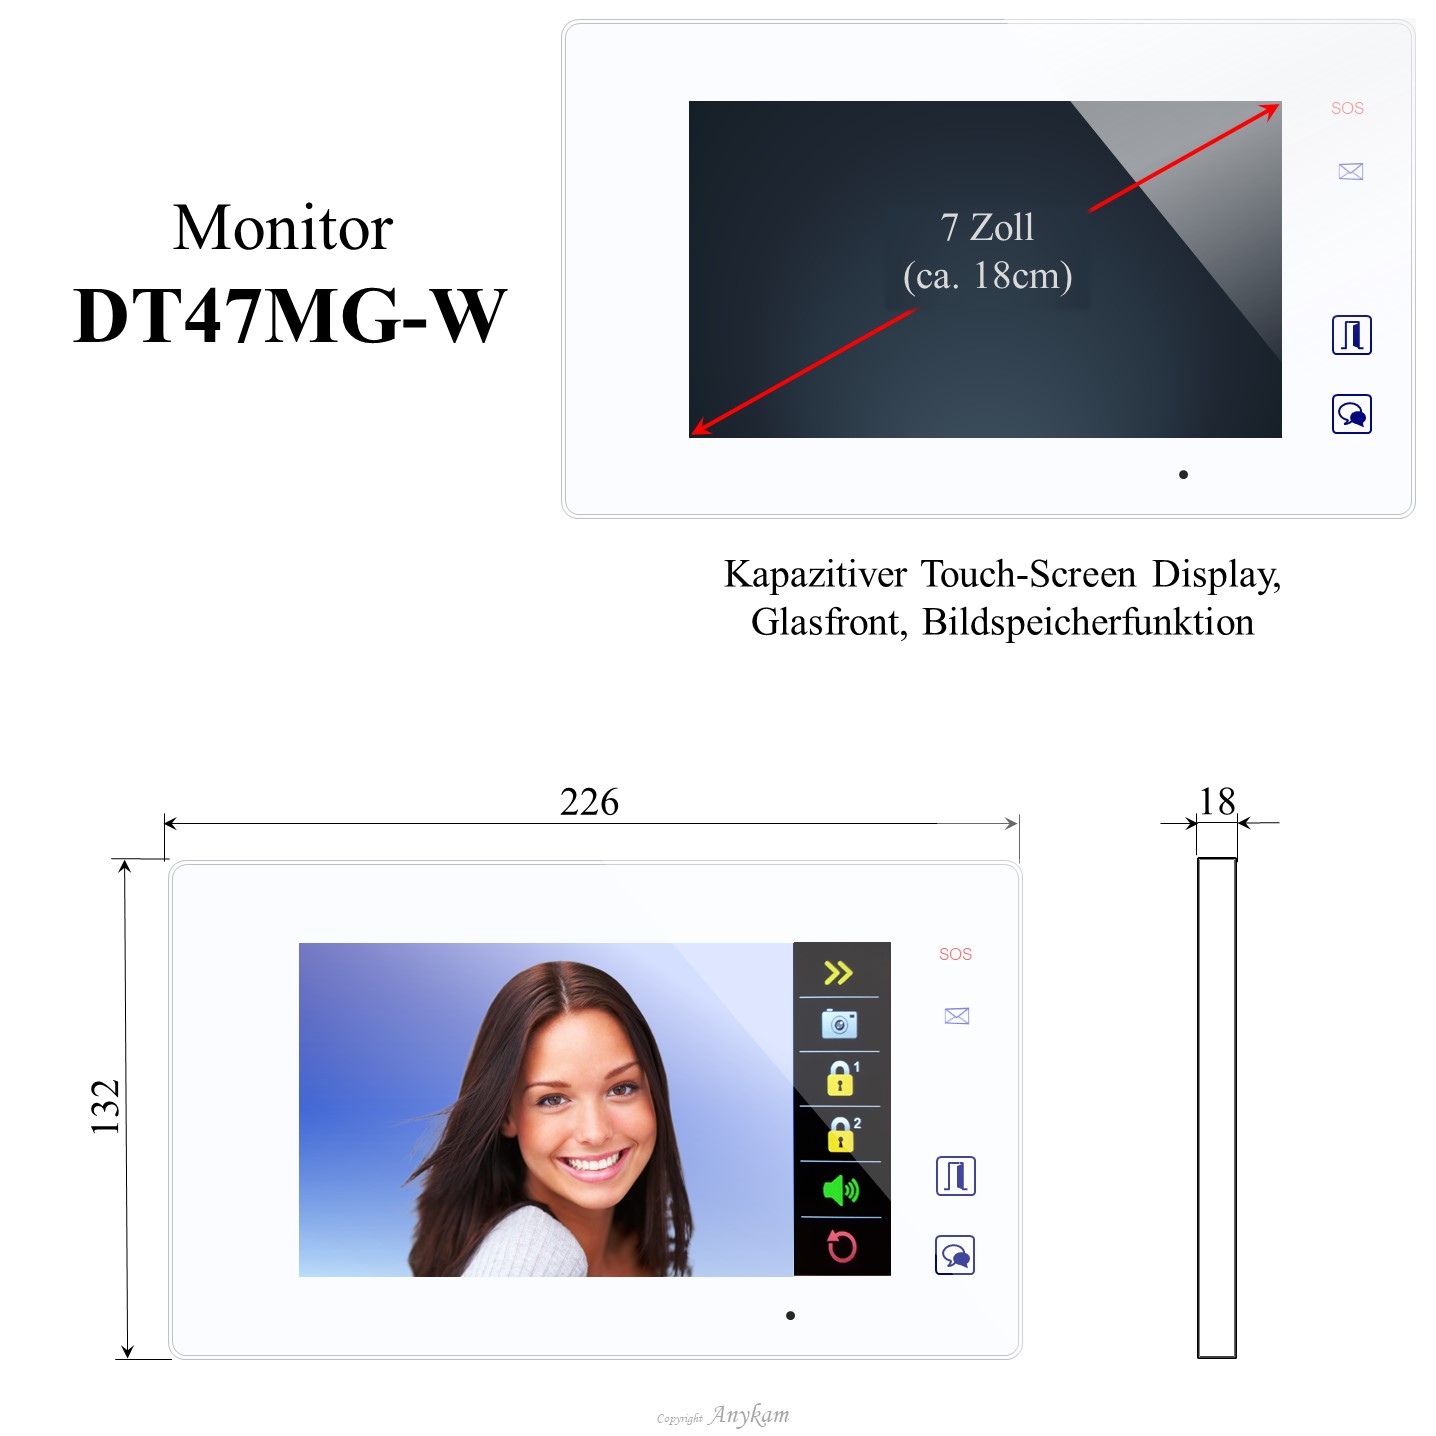 Monitor DT47MG-W, Innenstation der Videosprechanlage mit 2Draht Technik